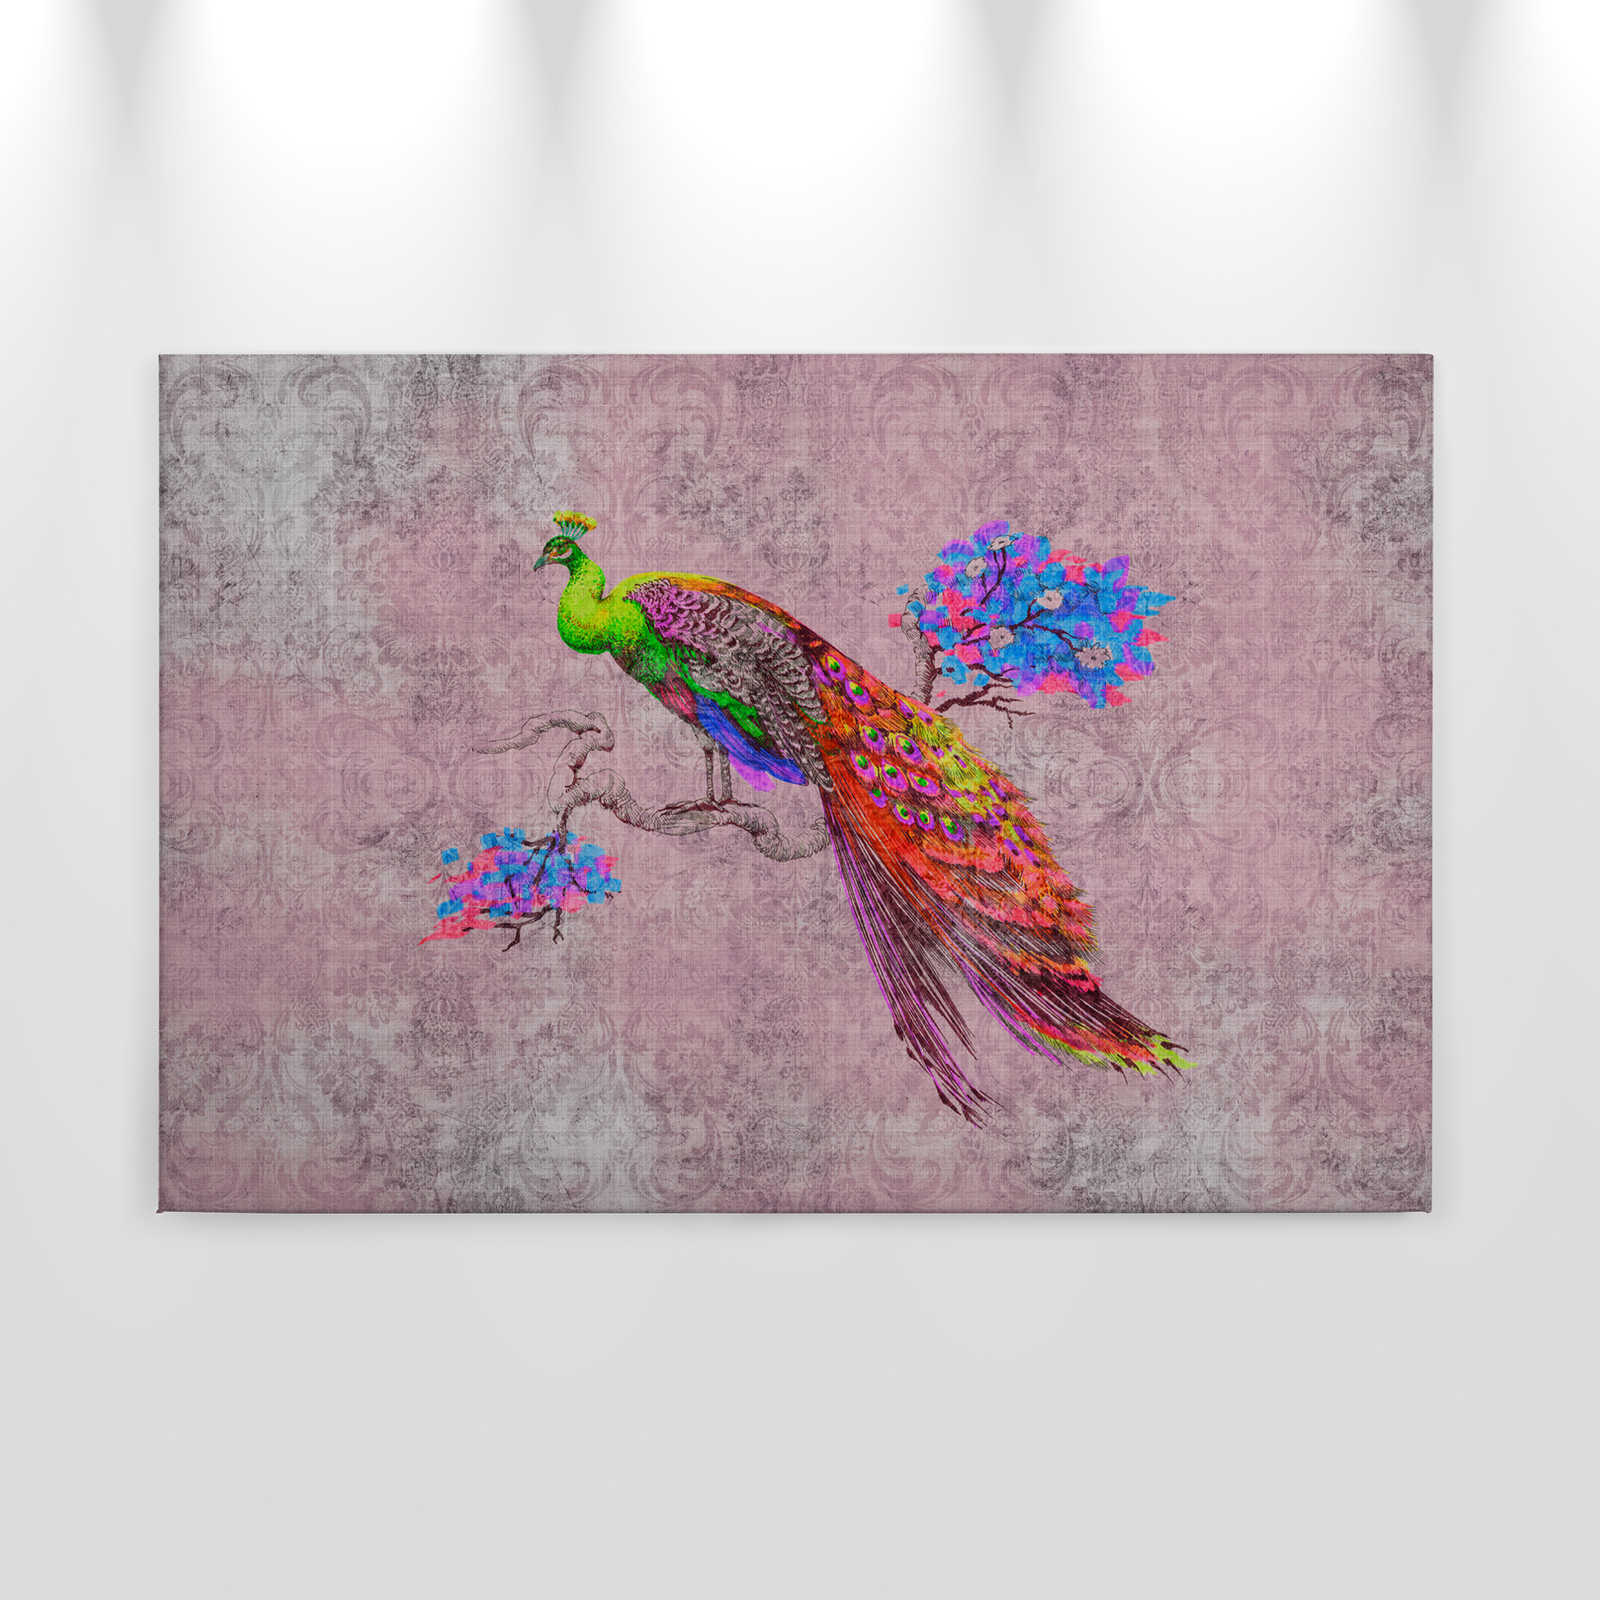             Peacock 2 - Tableau toile avec motif paon & ornement en structure lin naturel - 0,90 m x 0,60 m
        